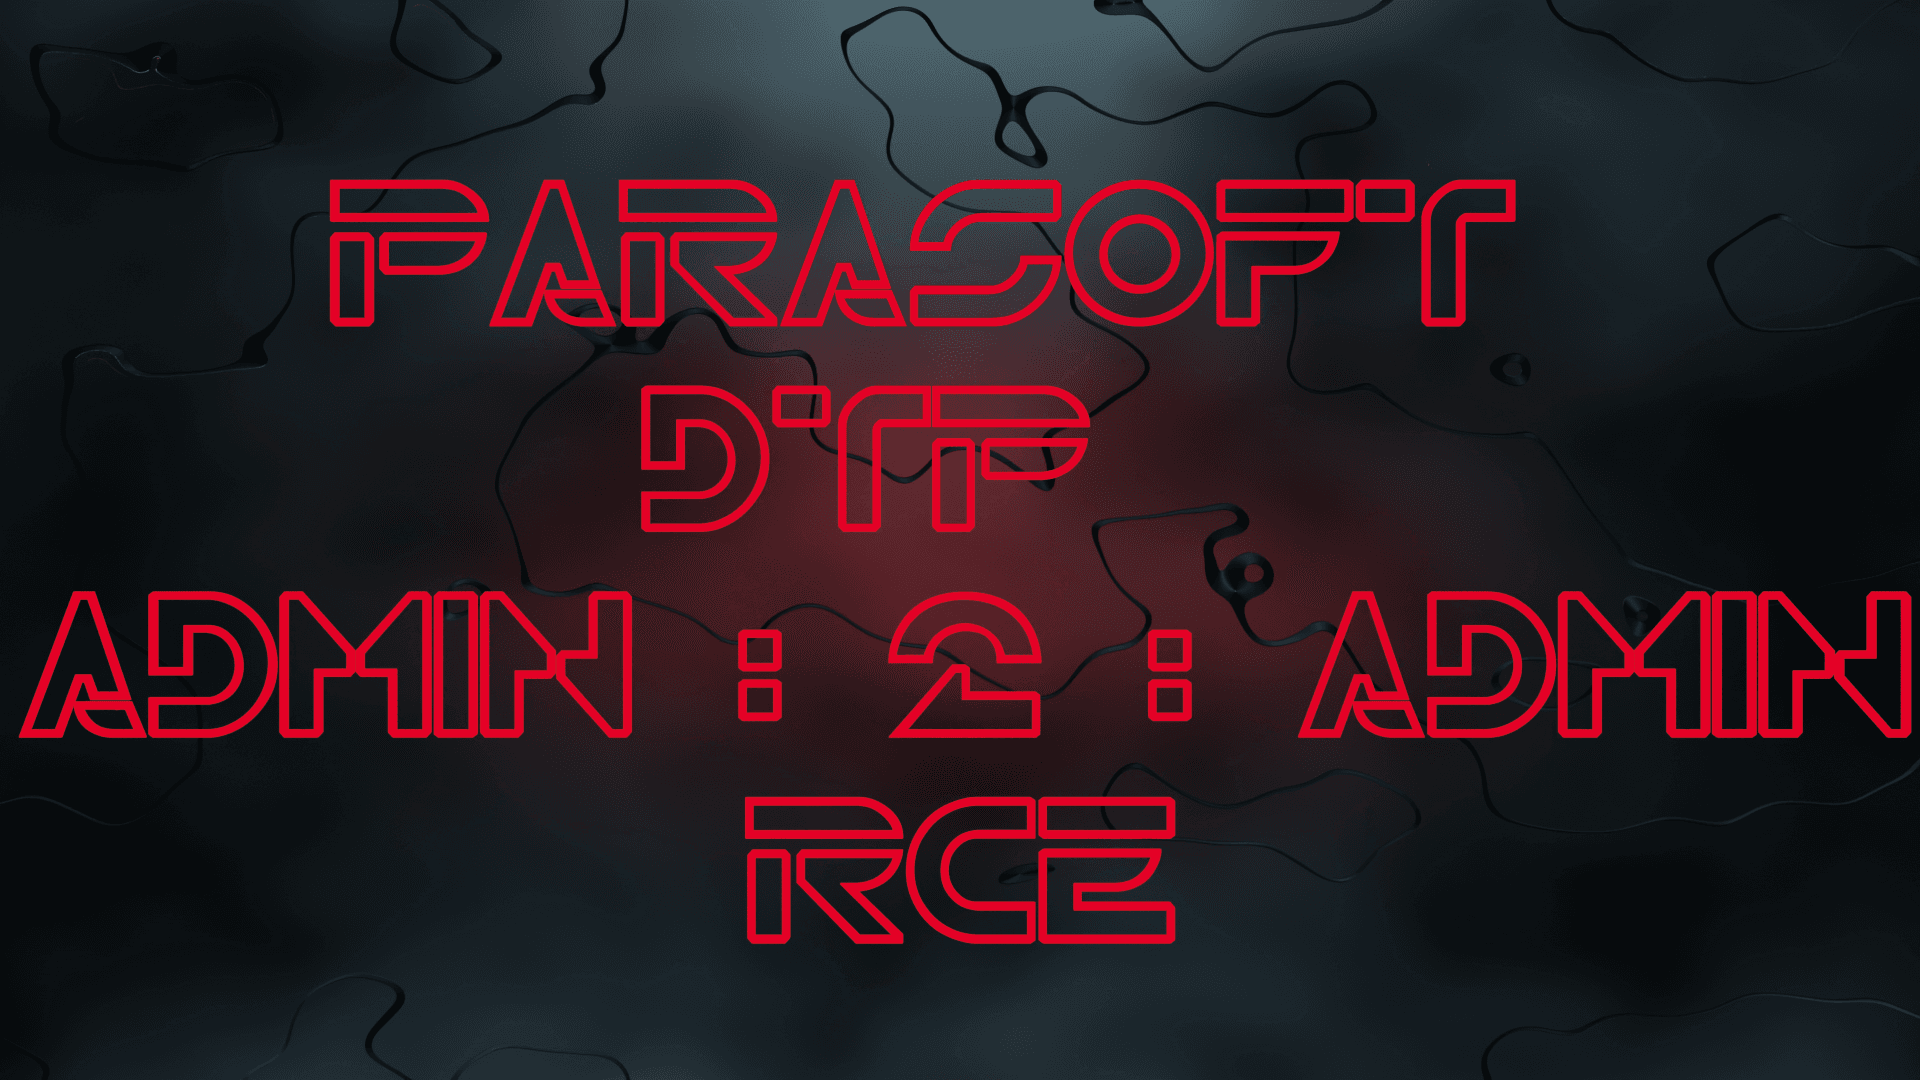 Battling Parasoft DTP :: Default Creds to RCE